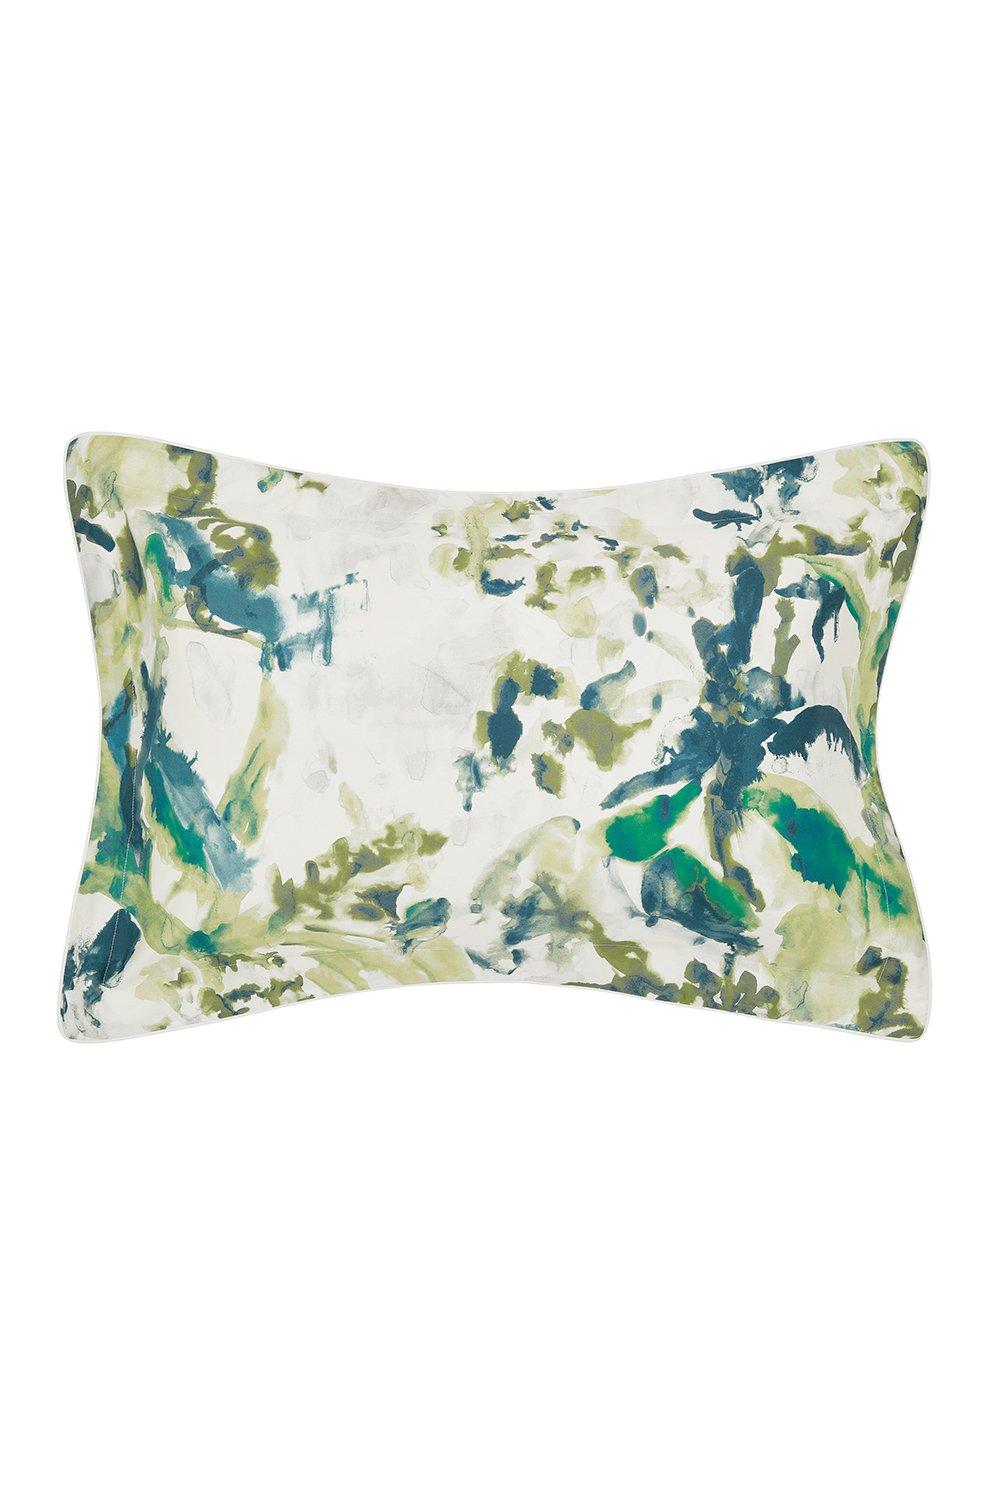 'Long Water Botanical' Oxford Pillowcase